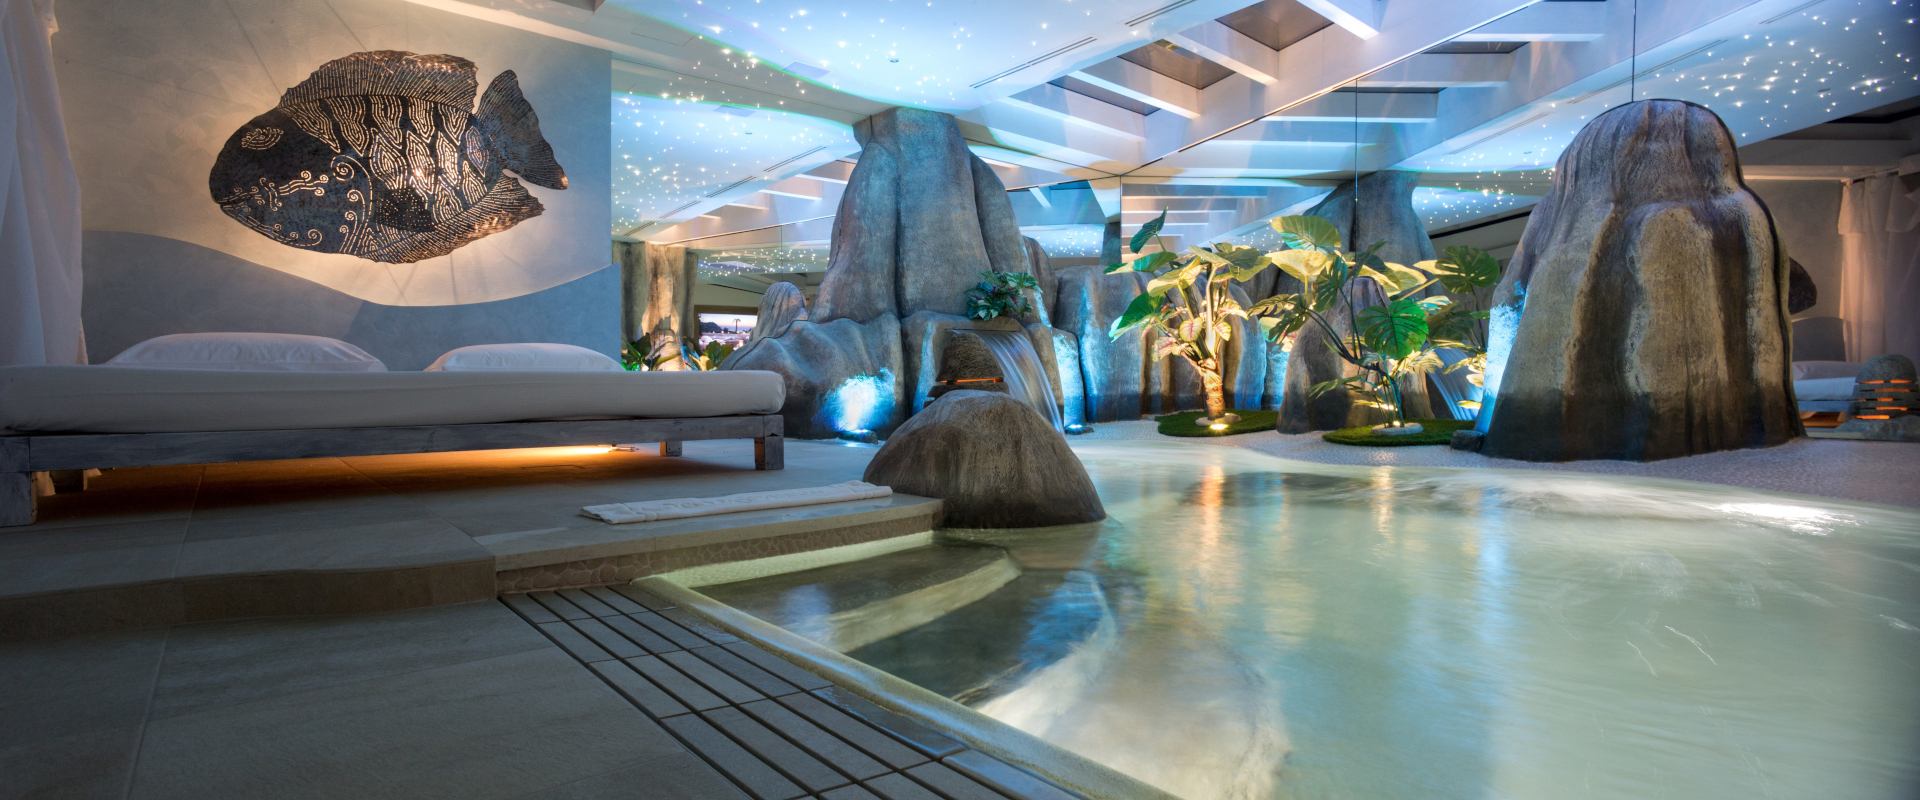 Pool Villa Seychelles